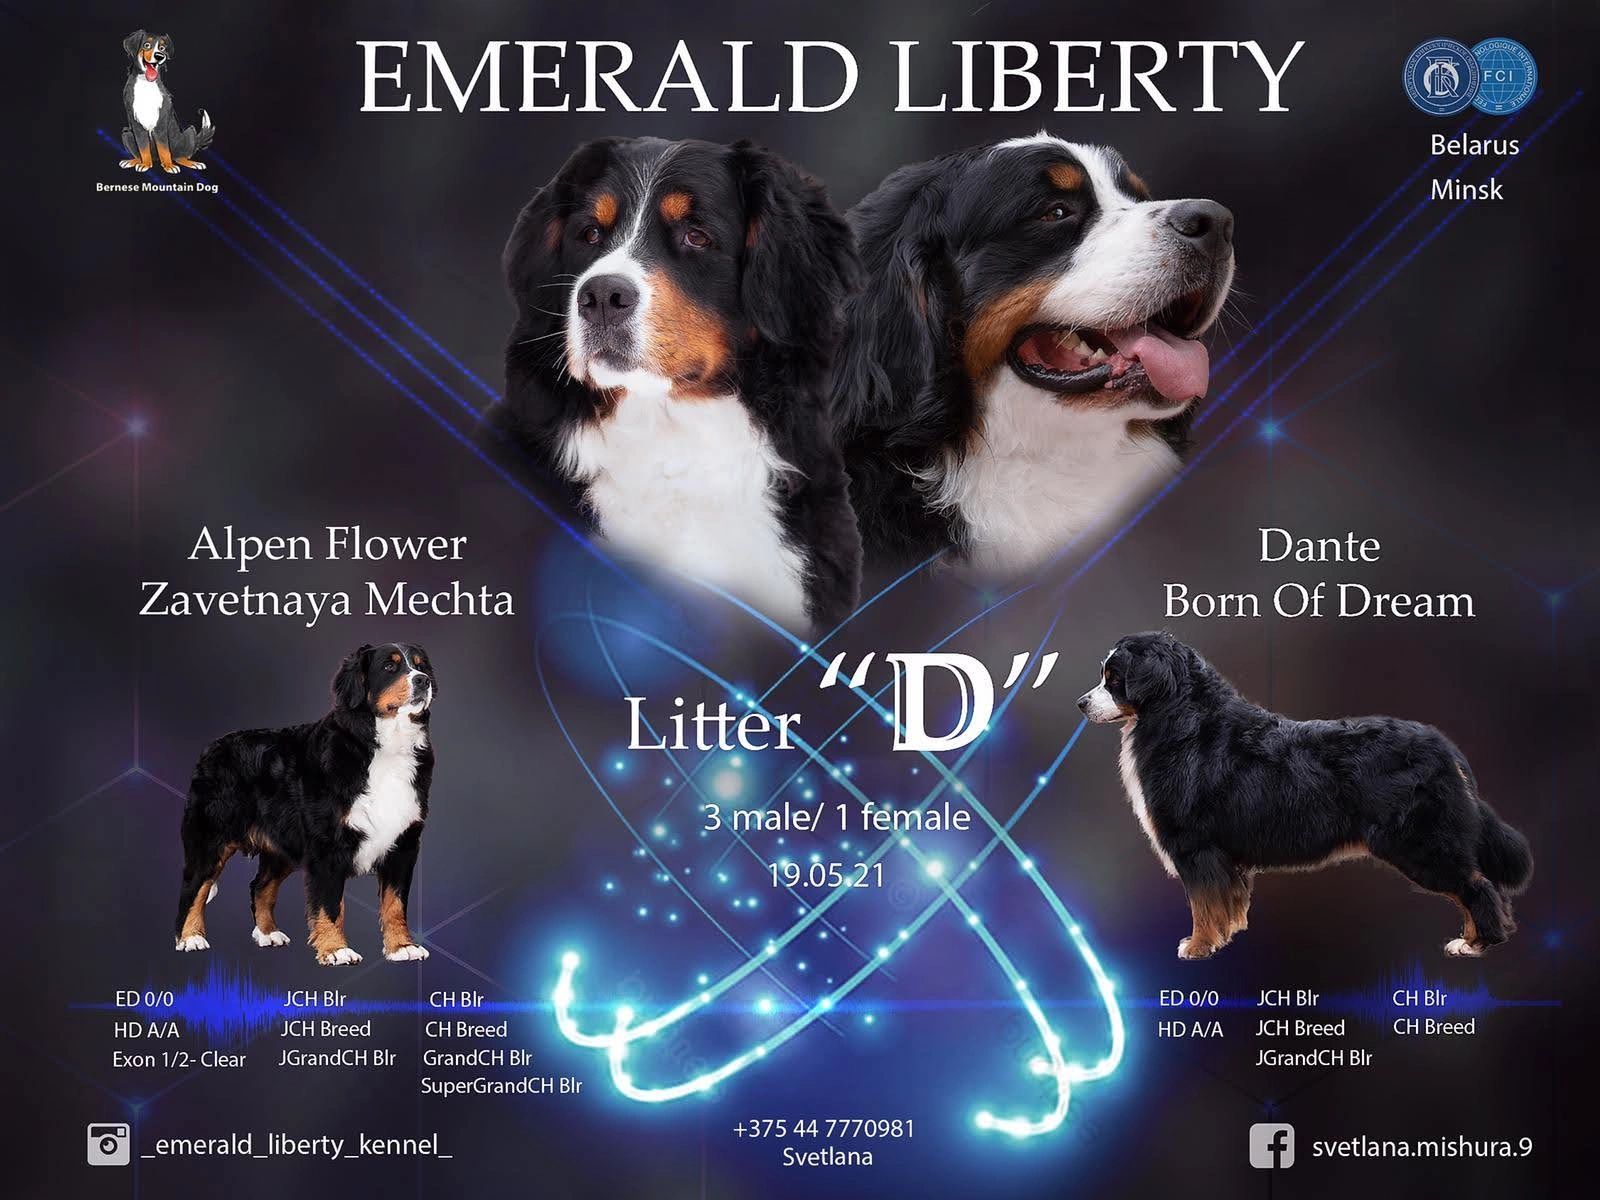 Parents Litter D Emerald Liberty bmdpuppy.com
Emerald Liberty kennel bernese mountain dogs - parents